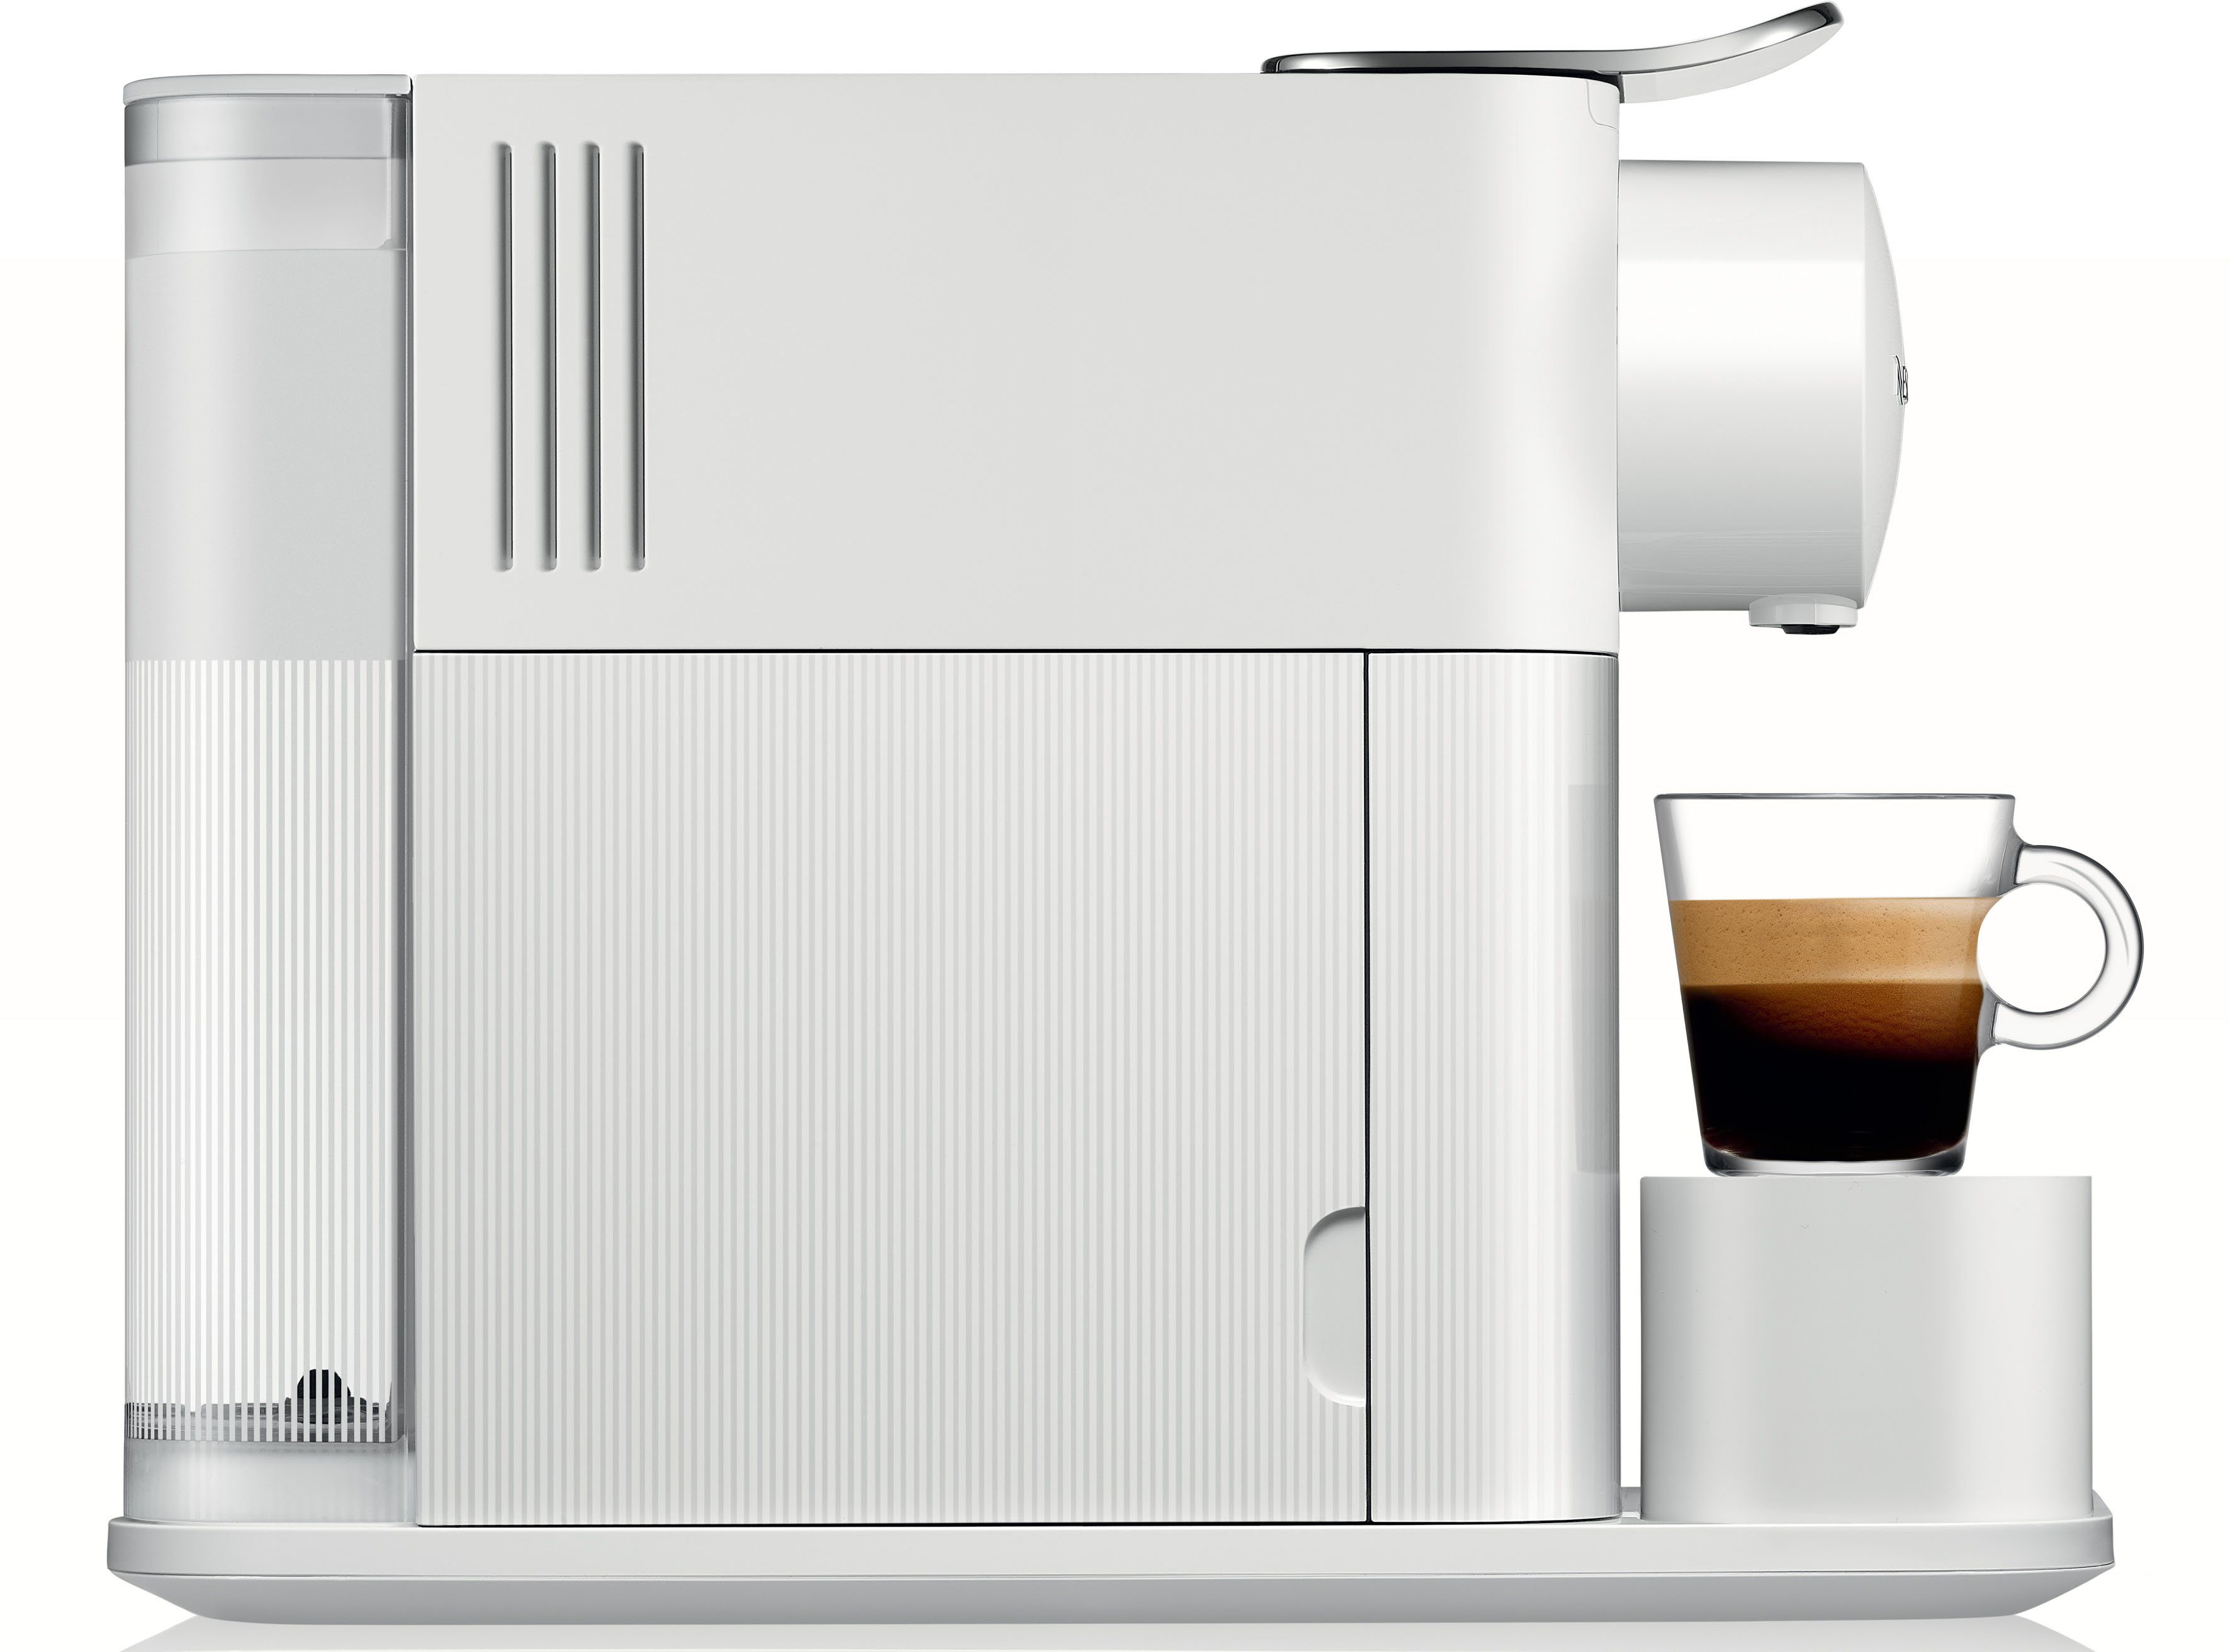 Nespresso Kapselmaschine Lattissima One EN510.W DeLonghi, mit Willkommenspaket inkl. 7 Kapseln von White